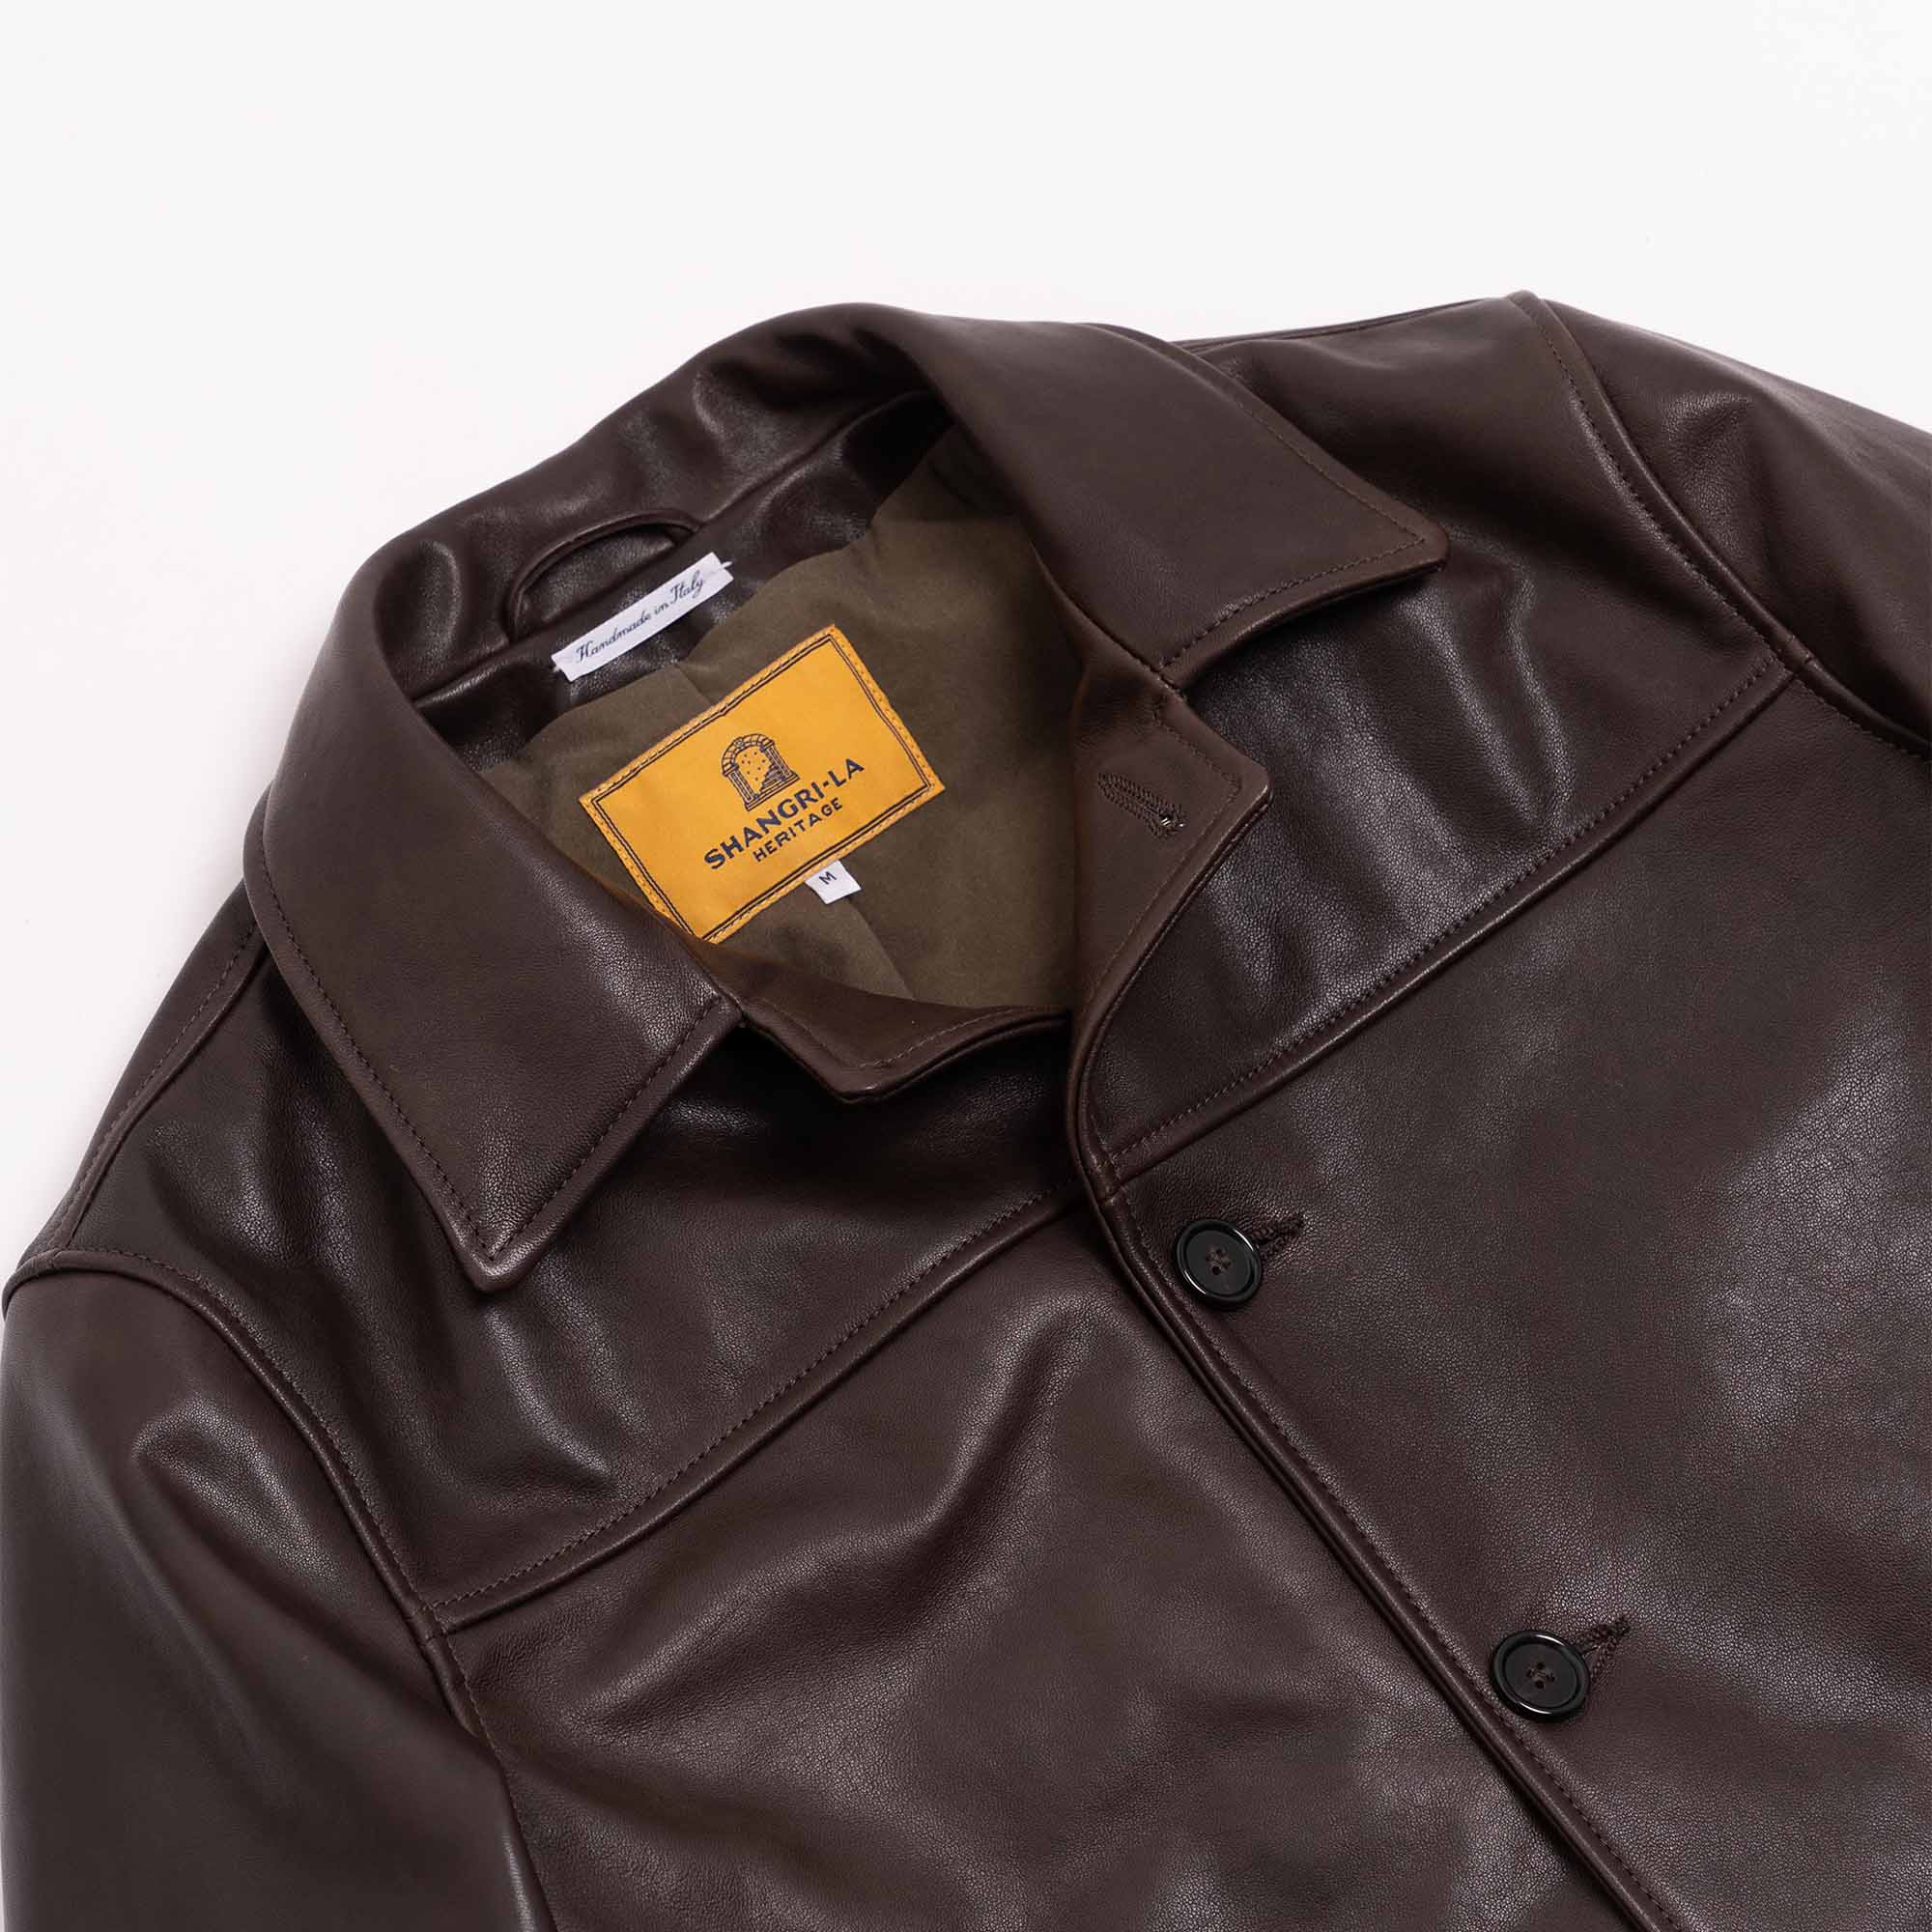 “Enzo” Testa di Moro Leather Car Coat